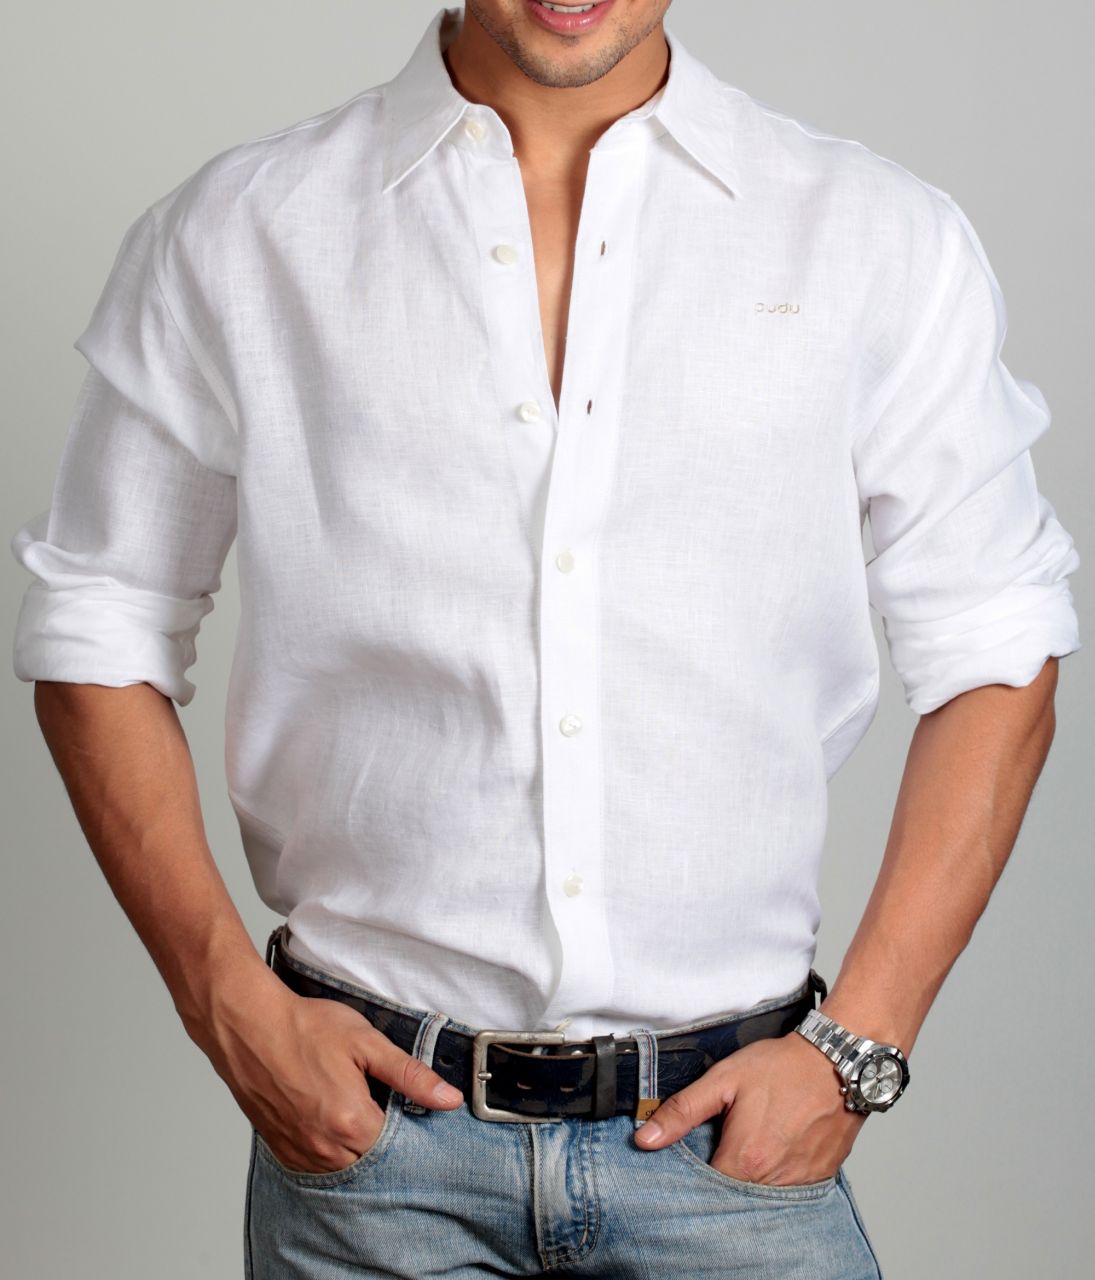 Moda męska i styl - biała koszula